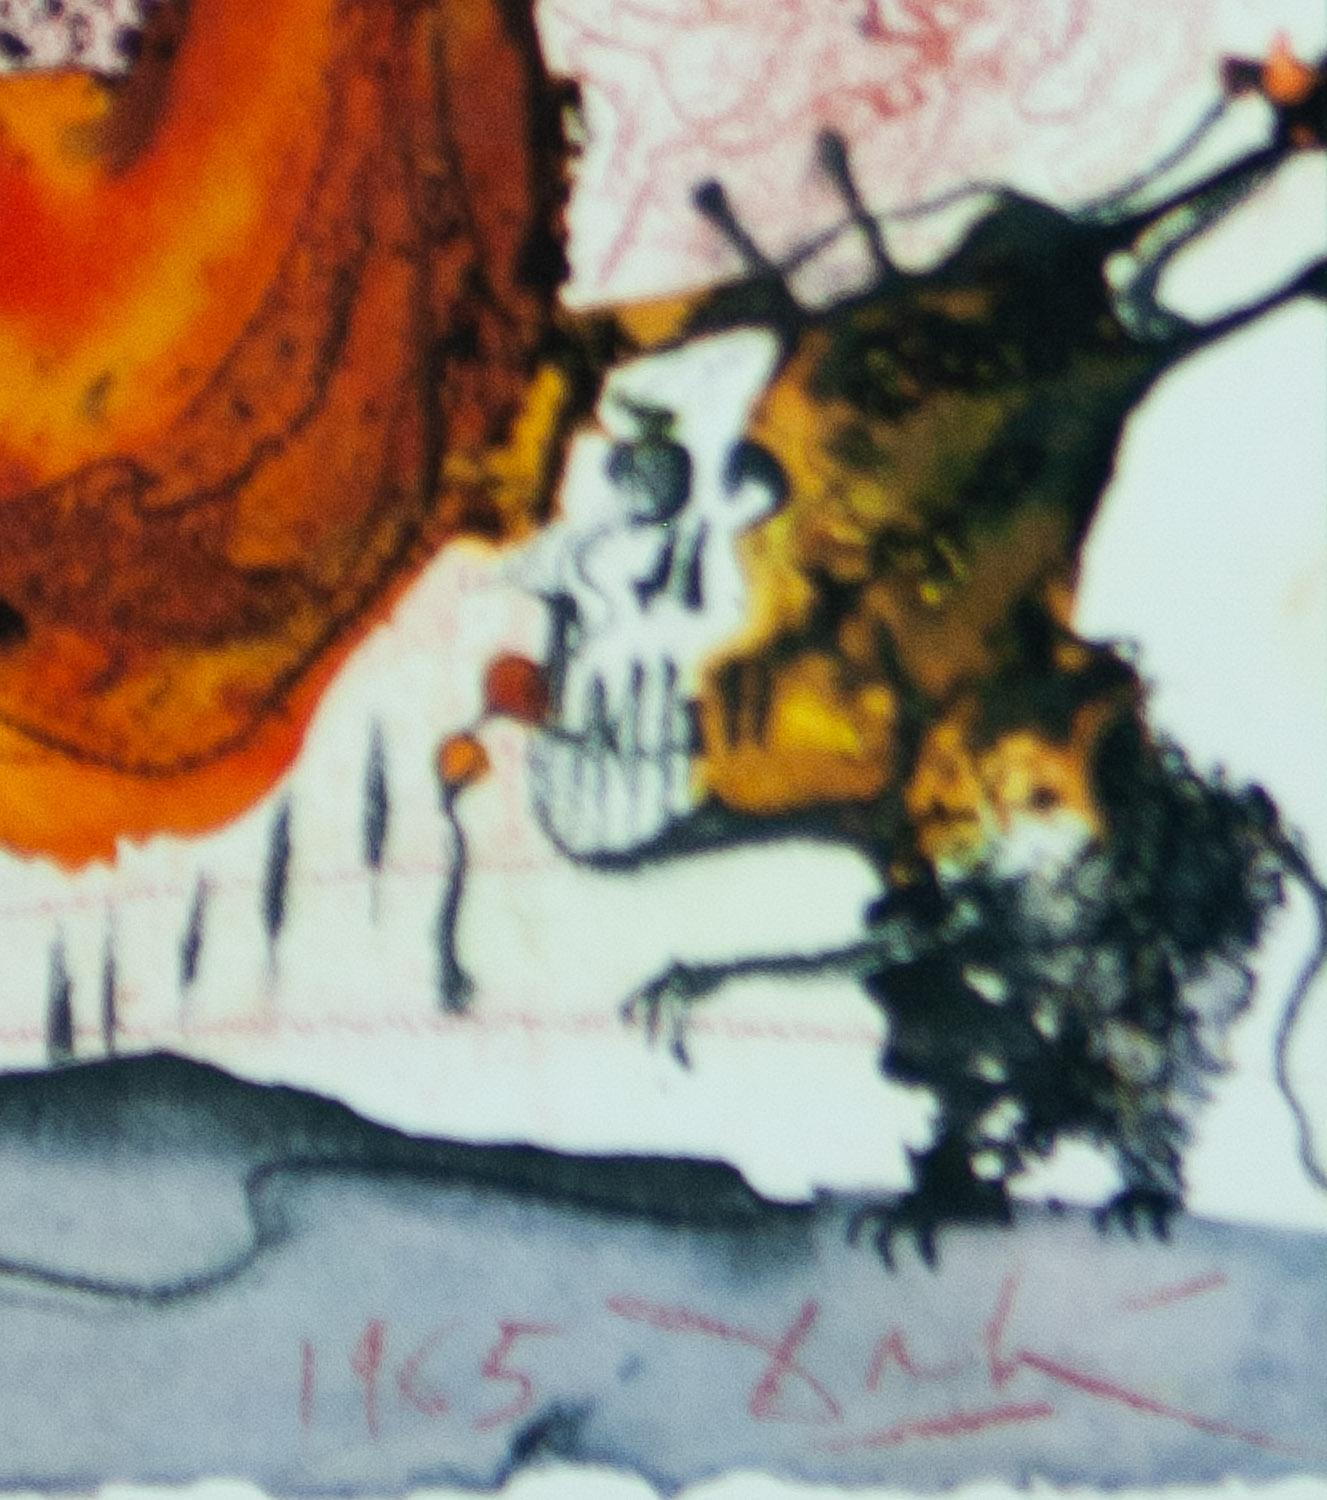 Elijah par un tourbillon sur un chariot de feu de Biblia Sacra par Salvador Dali - Surréalisme Print par Salvador Dalí